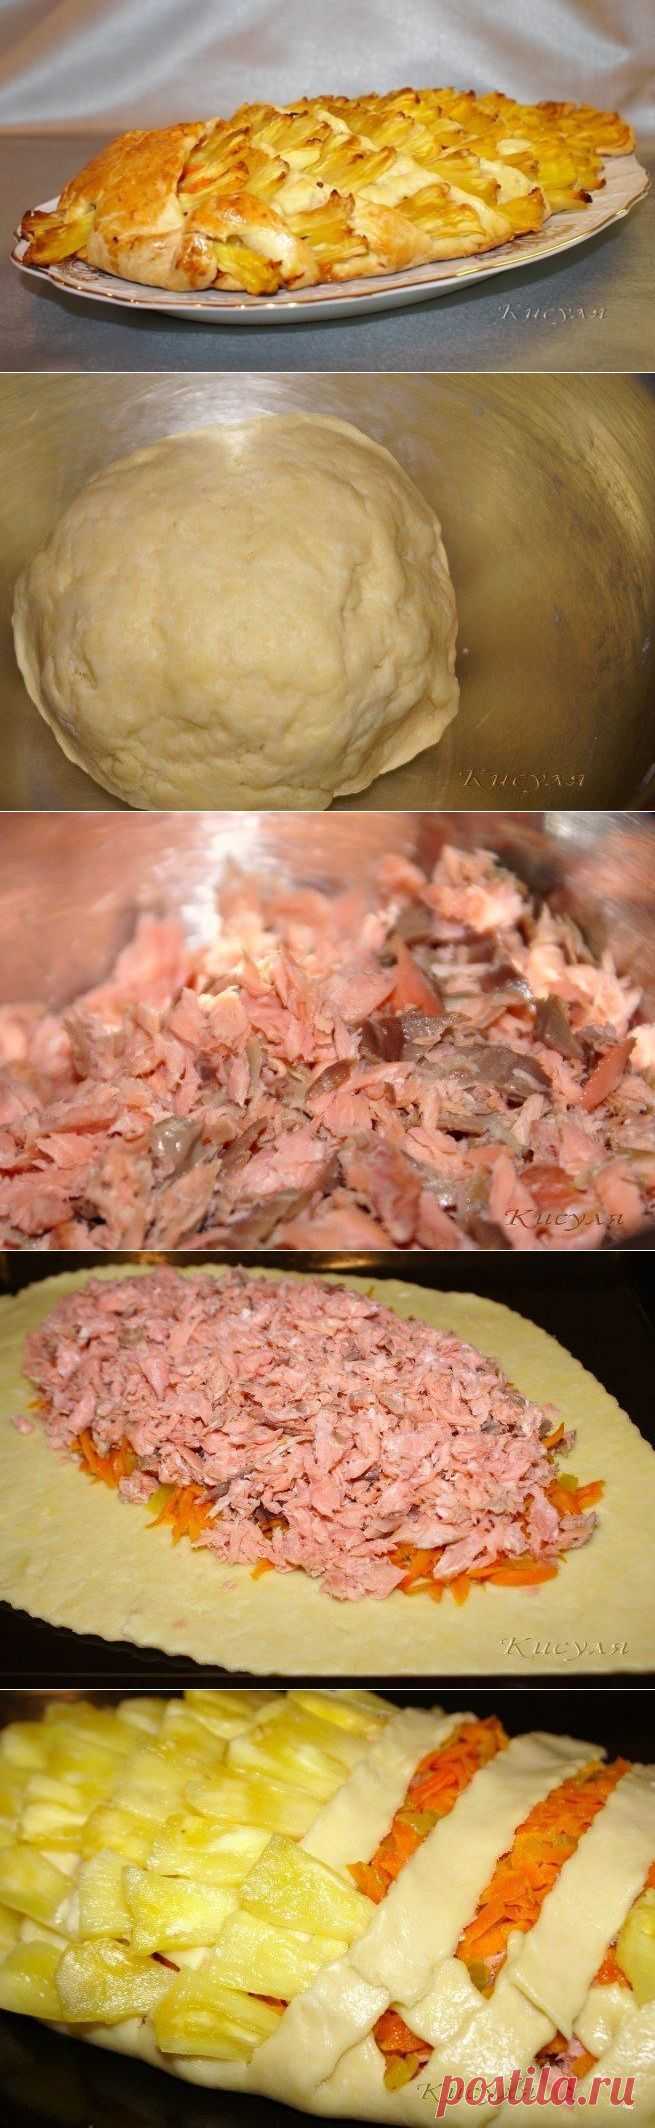 Как приготовить блюдо "пирог с рыбой и ананасом" - рецепт, ингридиенты и фотографии | sloosh